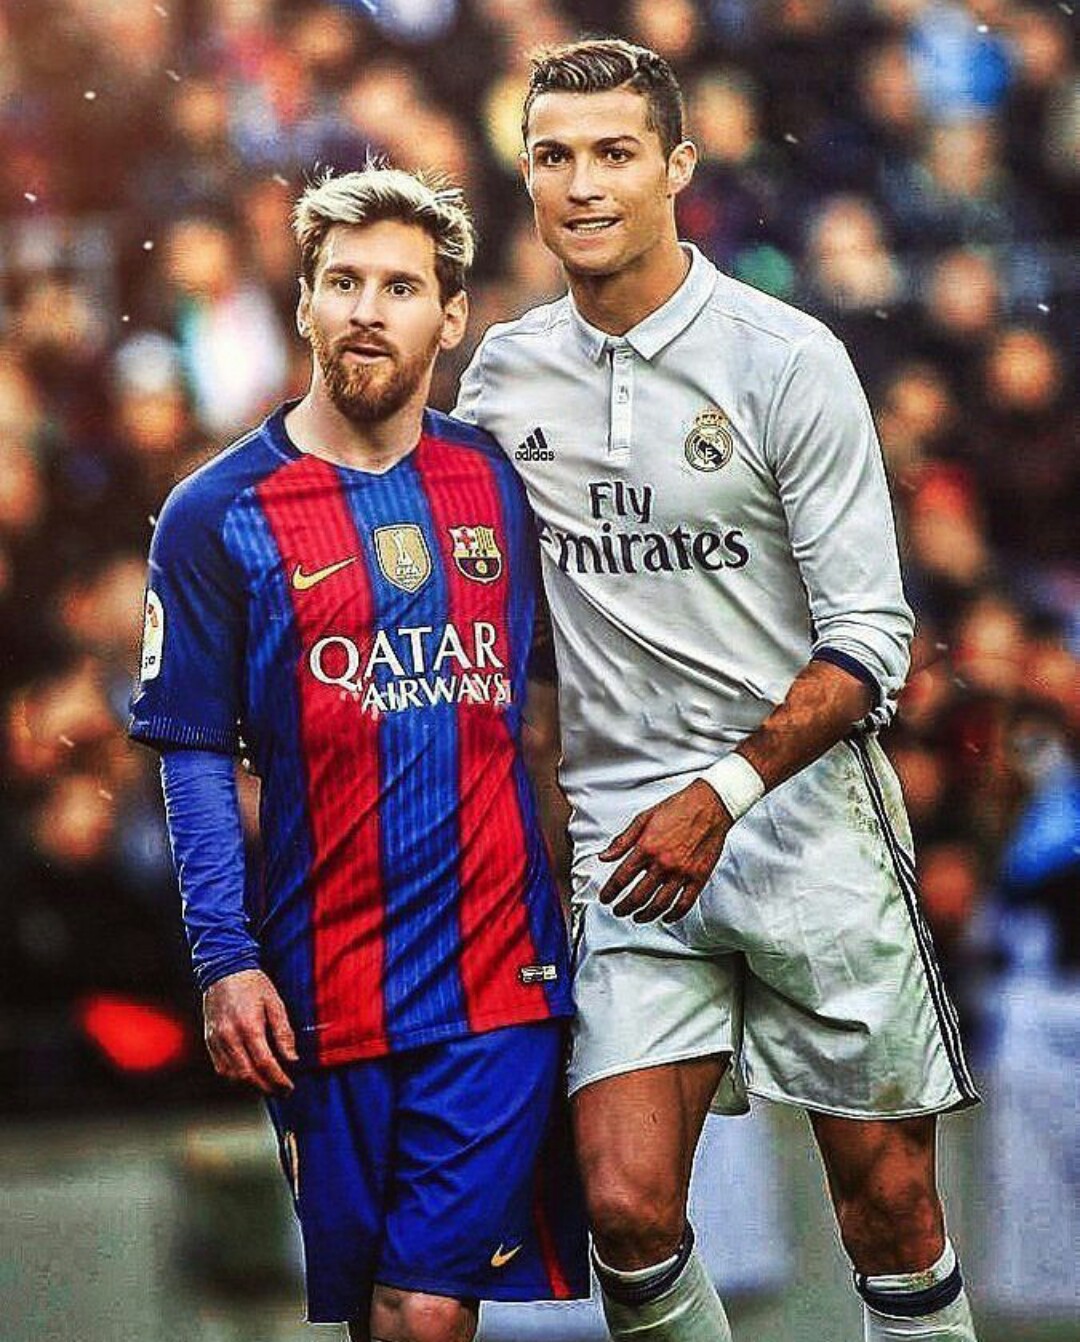 Ai là ngôi sao bóng đá số một thế giới? Ronaldo và Messi chắc chắn sẽ nằm trong danh sách. Hãy đến và chiêm ngưỡng hình ảnh của hai cầu thủ vĩ đại này để xem ai sẽ thuộc về vị trí đầu tiên.